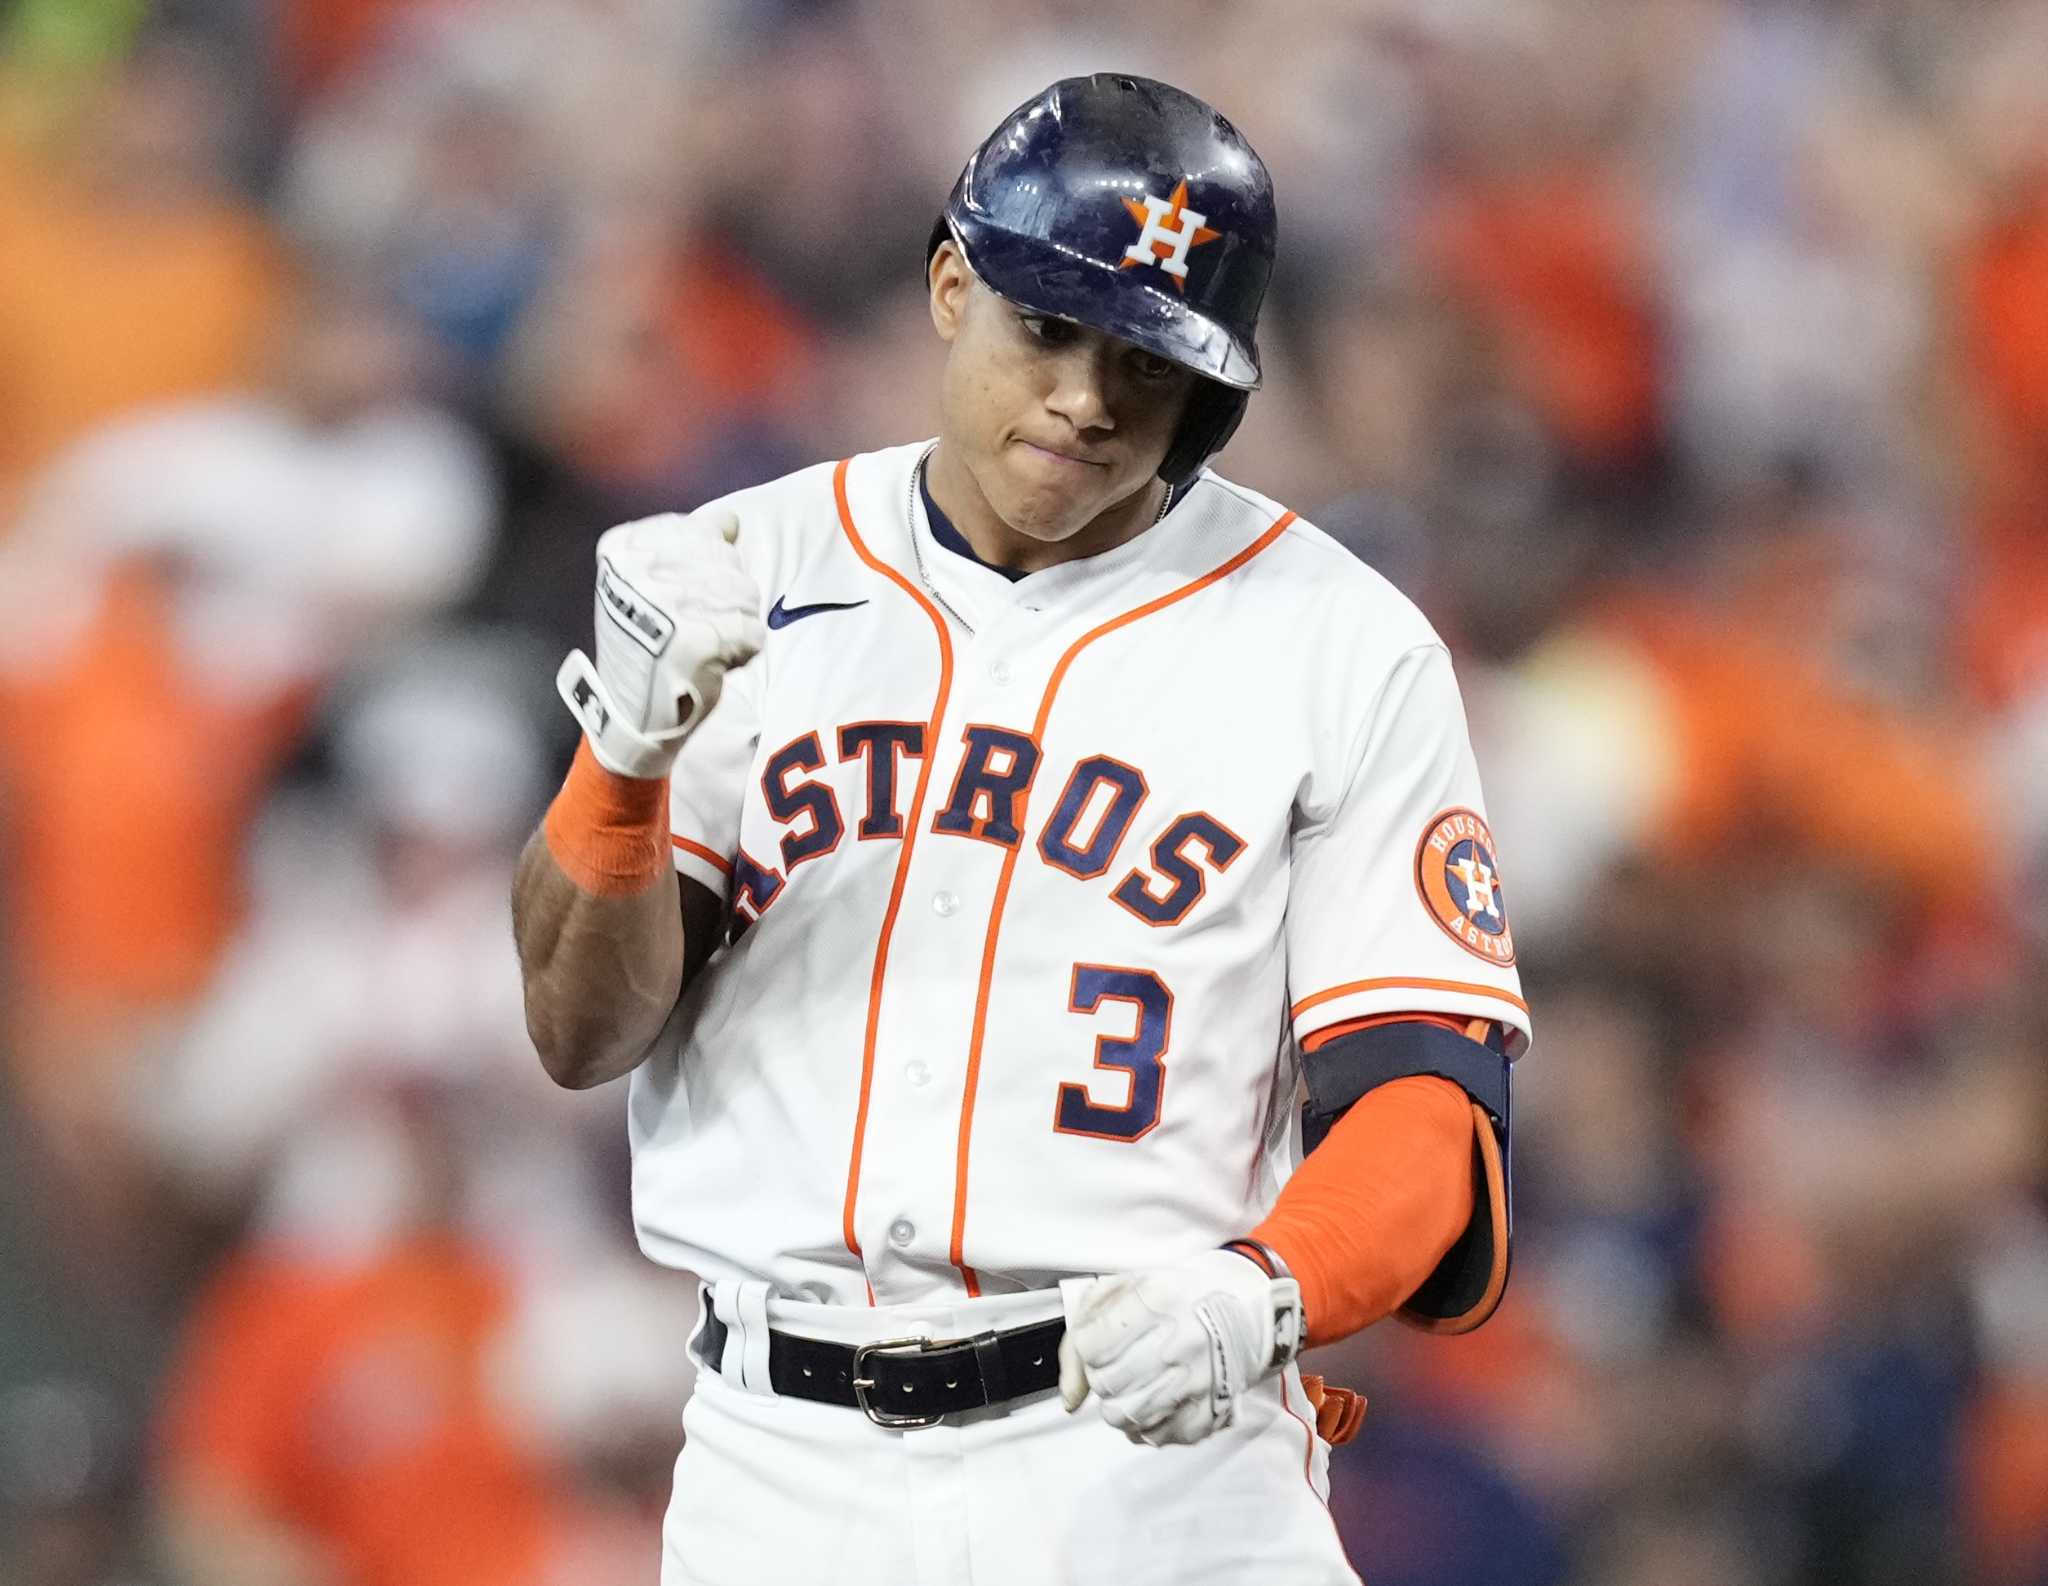 Houston Astros: The brief convo between Jeremy Peña, Carlos Correa